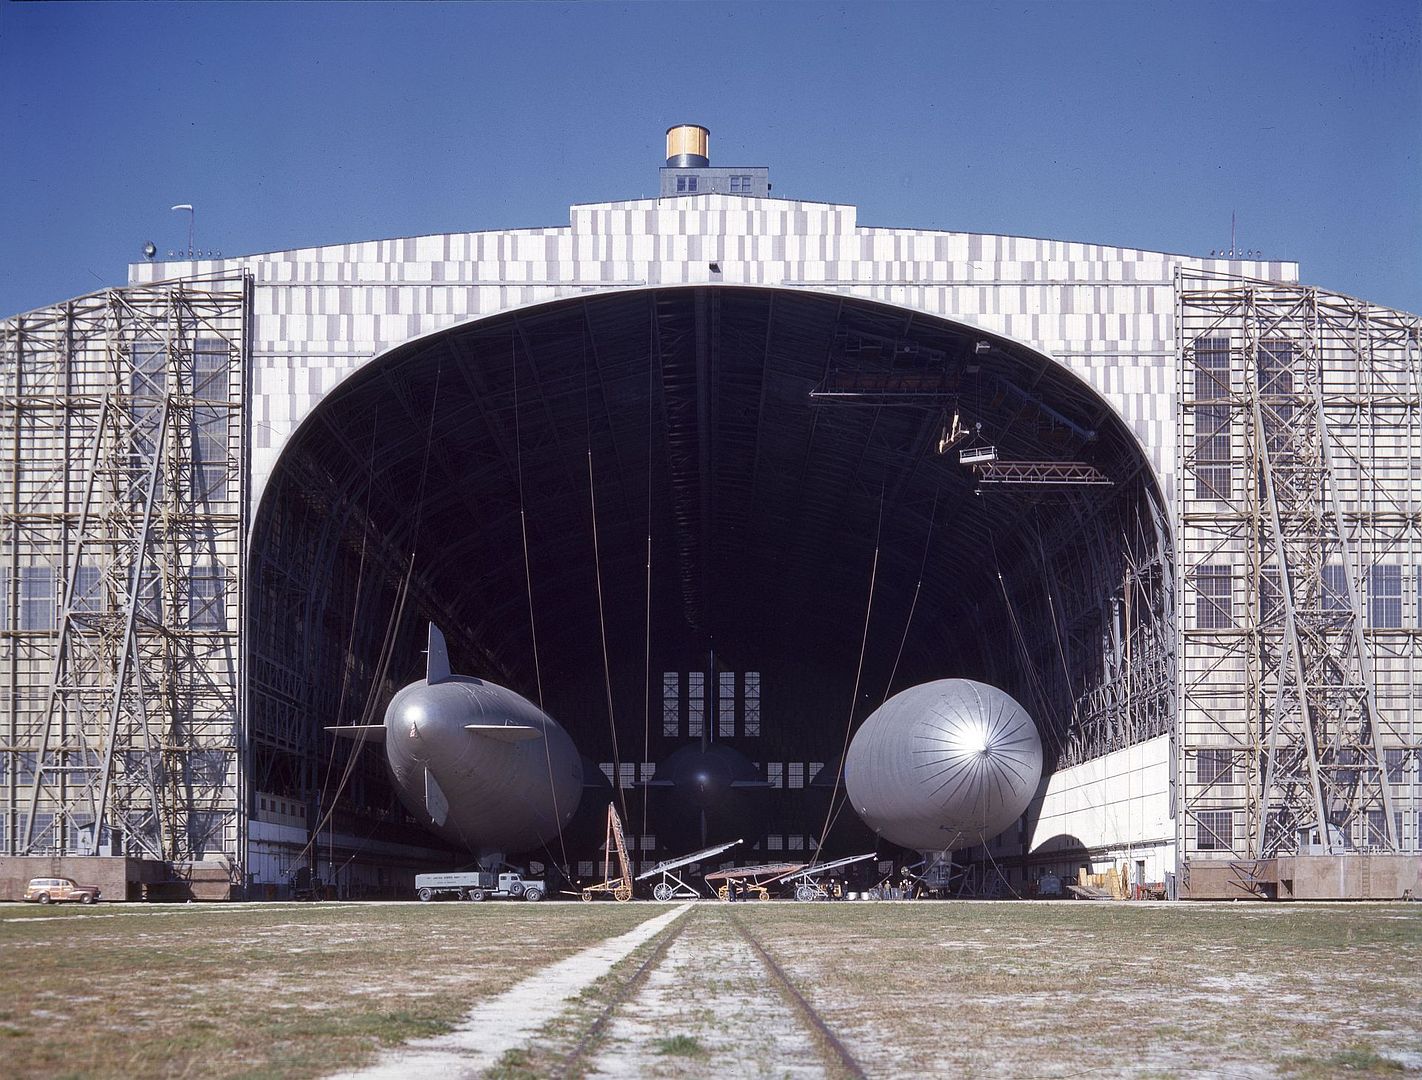 K Type Blimps In Airship Hangar At Naval Air Station Lakehurst New Jersey